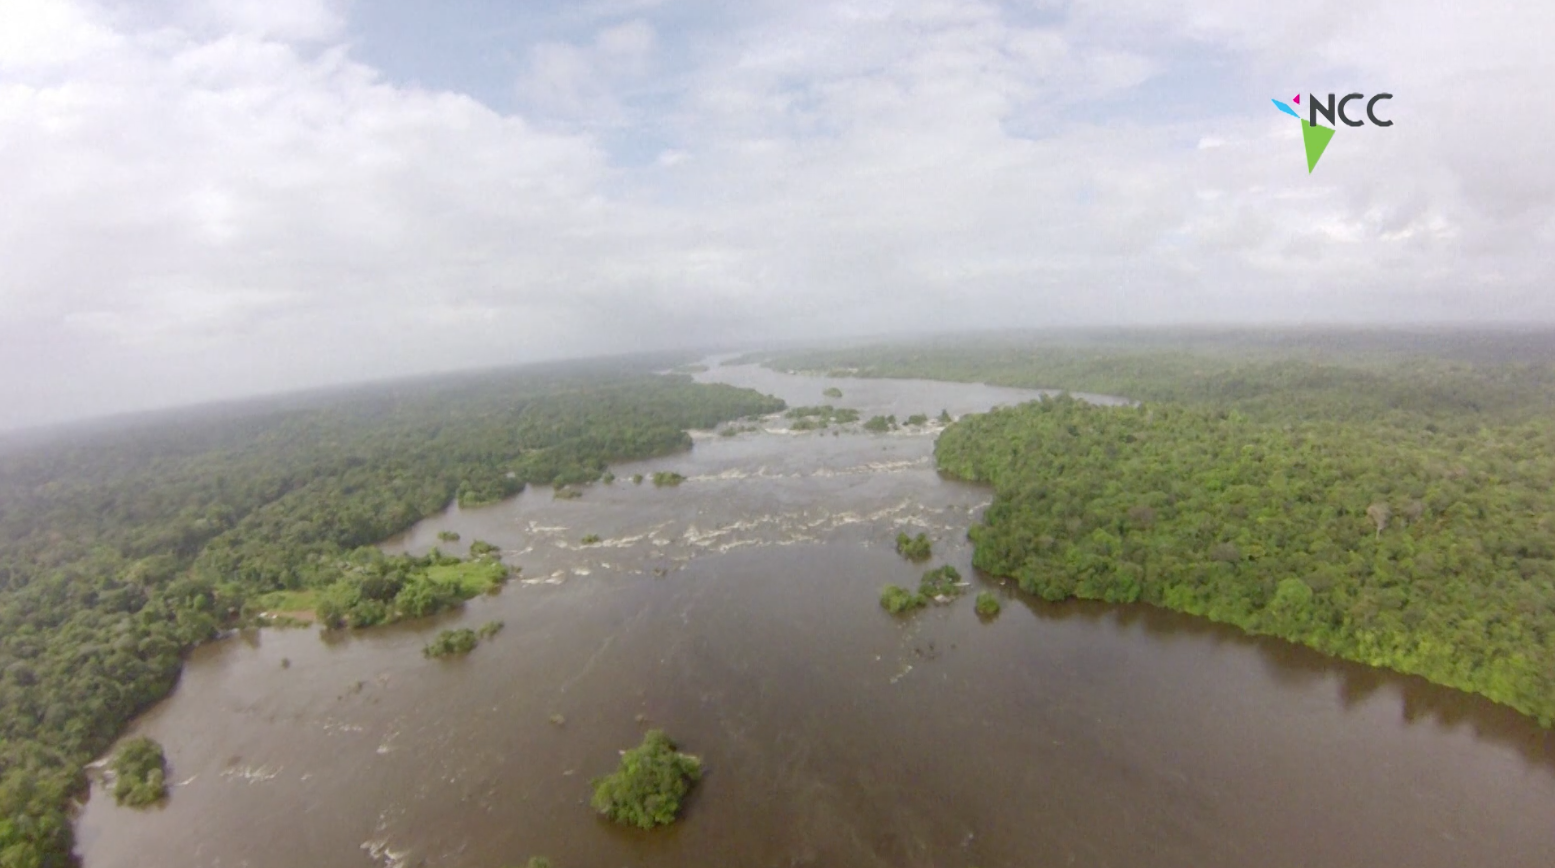 Presionado, Brasil anula permiso para explotación minera en reserva amazónica